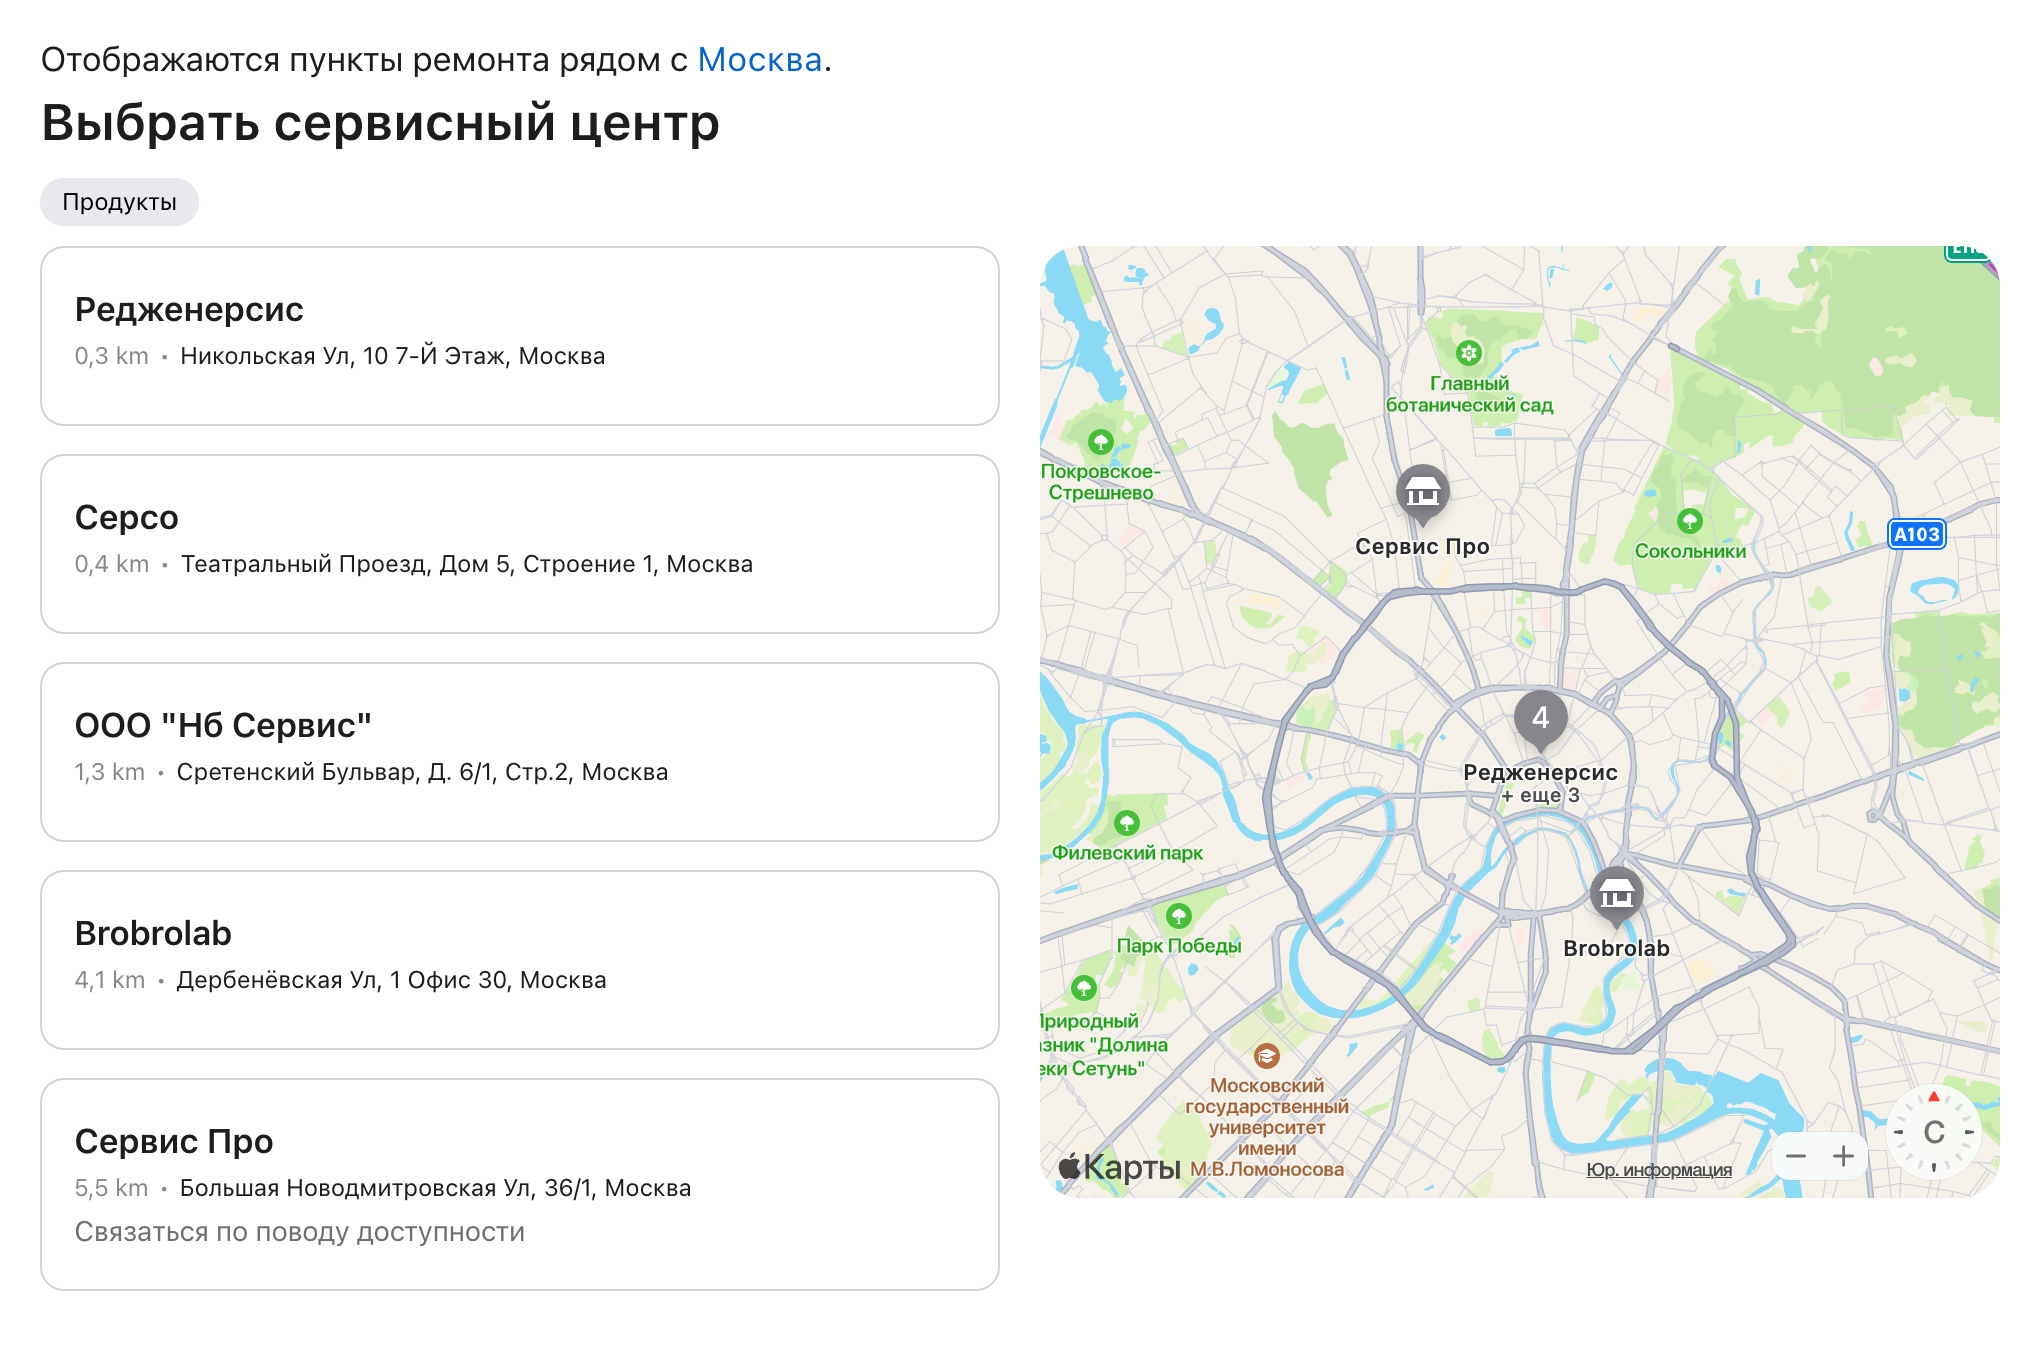 В Москве авторизованных центров Apple больше десятка — можно выбрать самый привлекательный. Источник: getsupport.apple.com